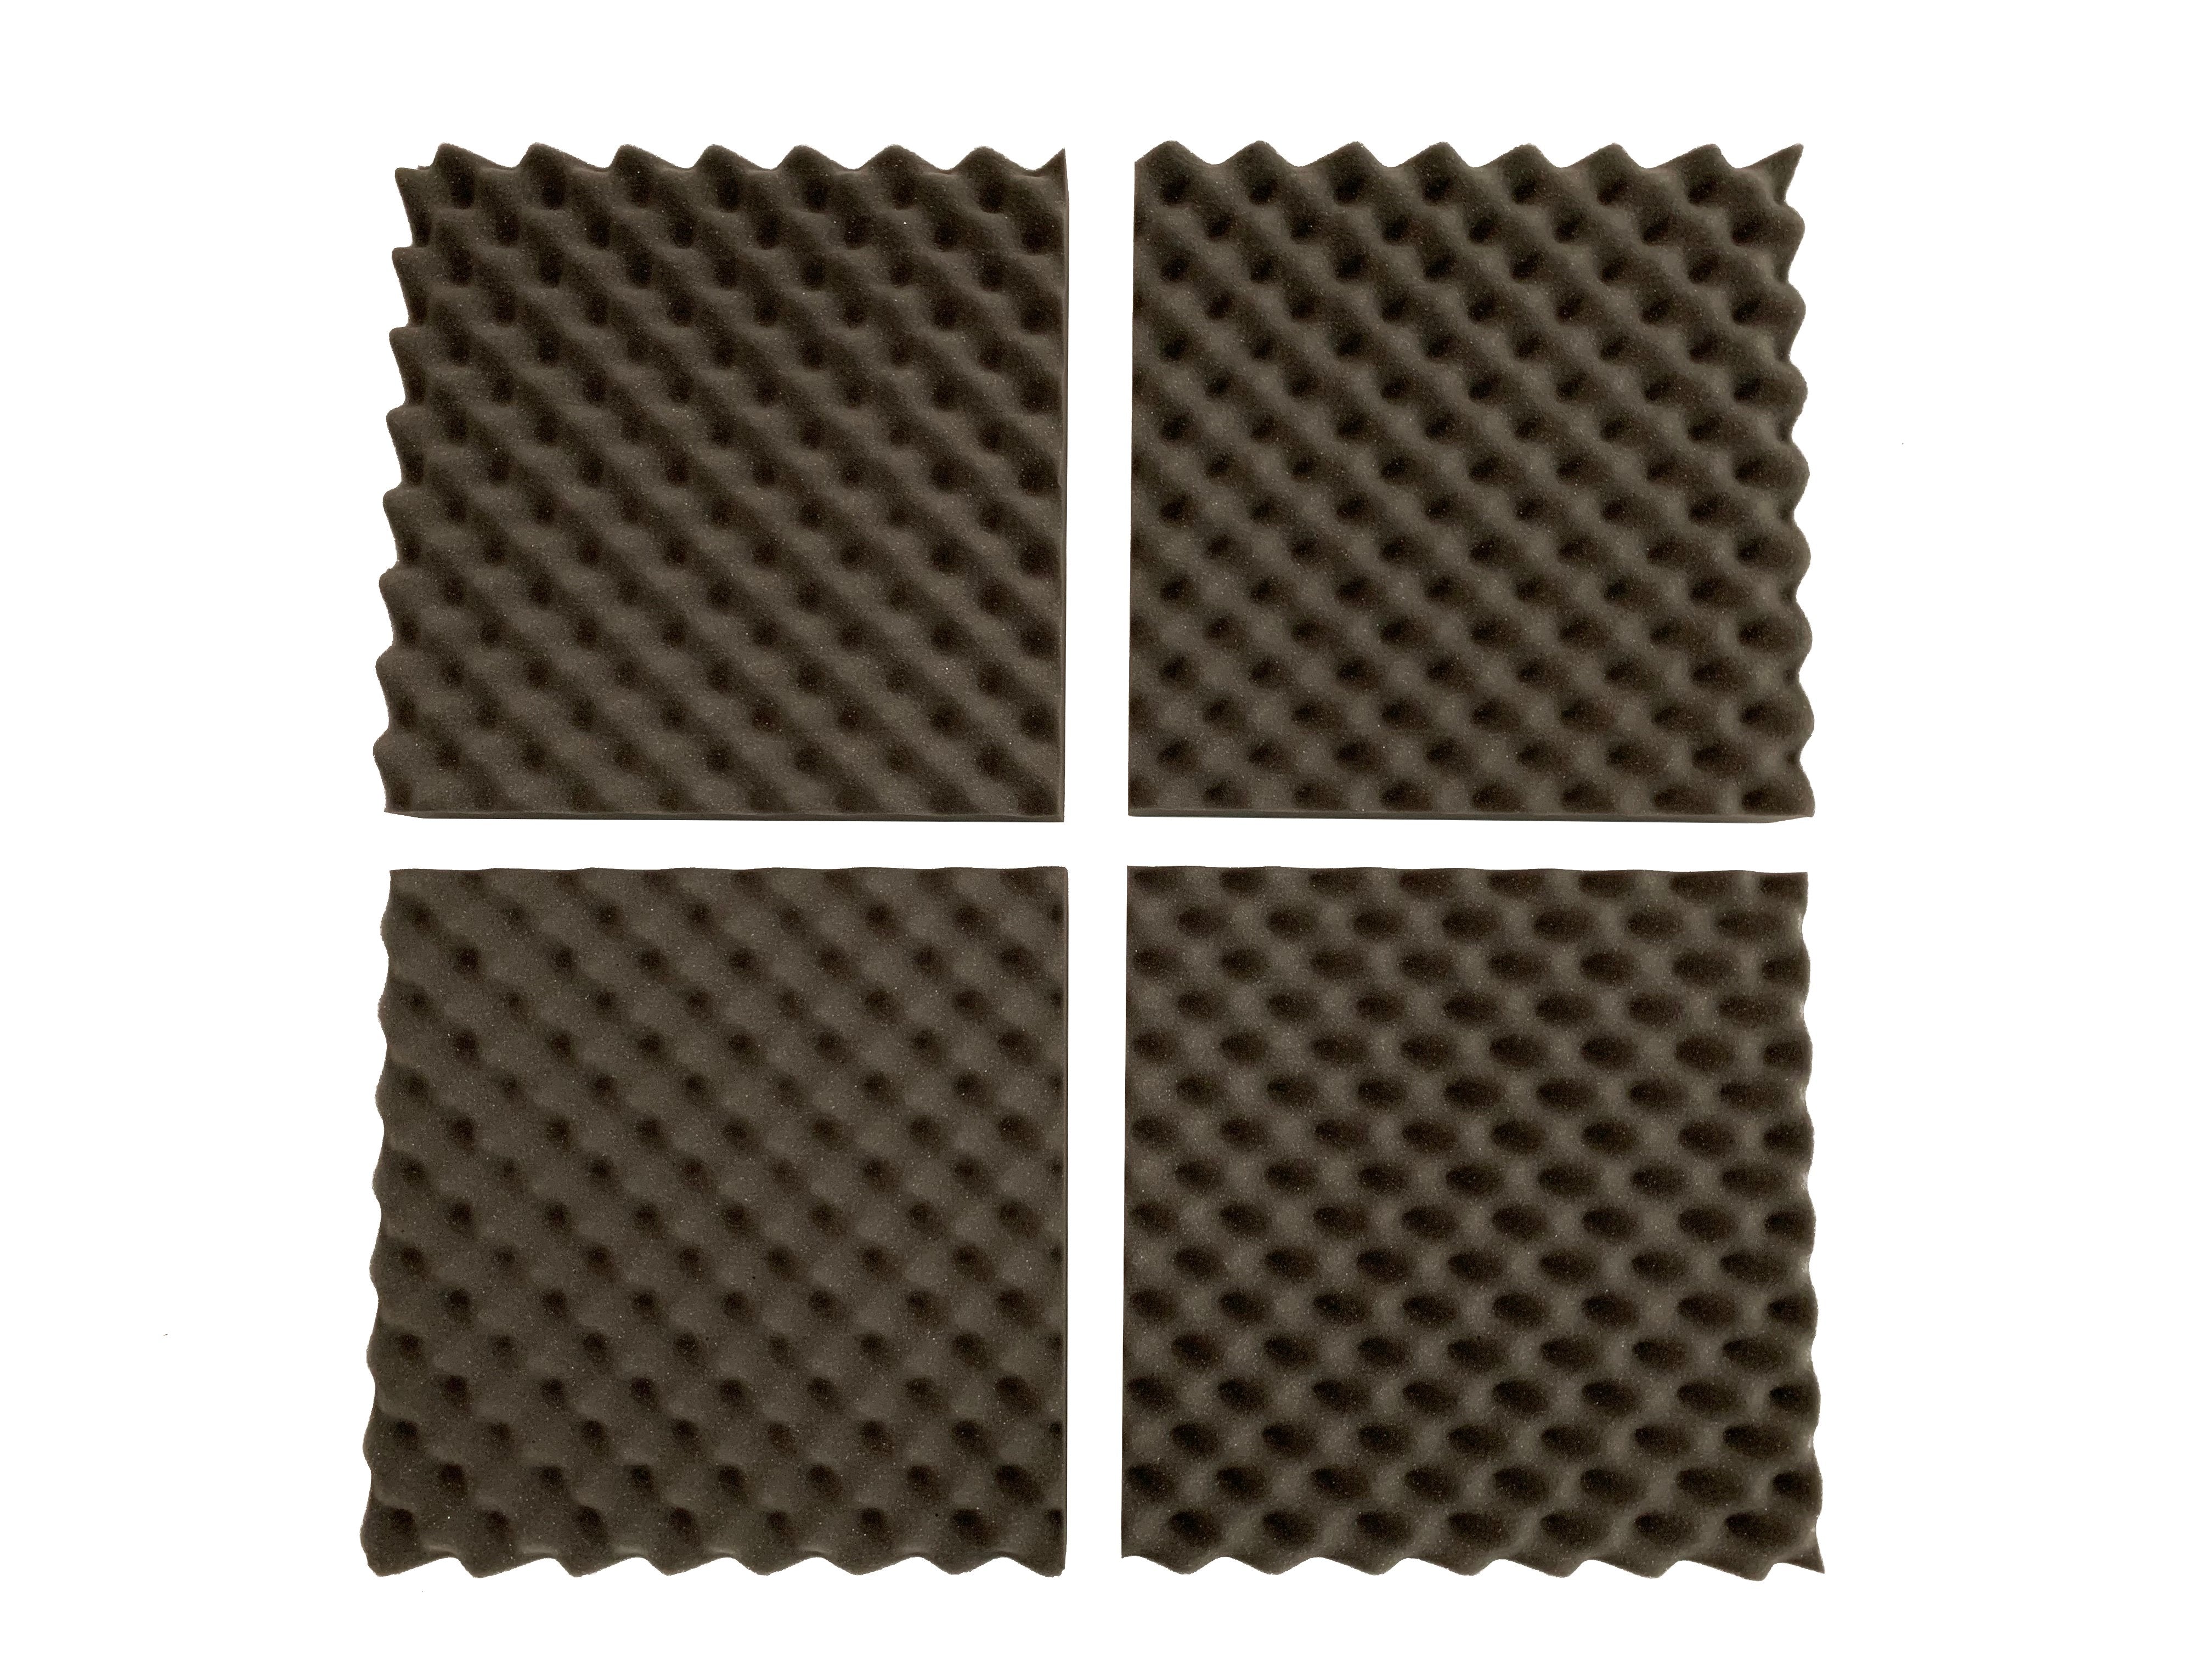 F.A.T. PRO Combo Acoustic Studio Foam Tile Kit - Advanced Acoustics